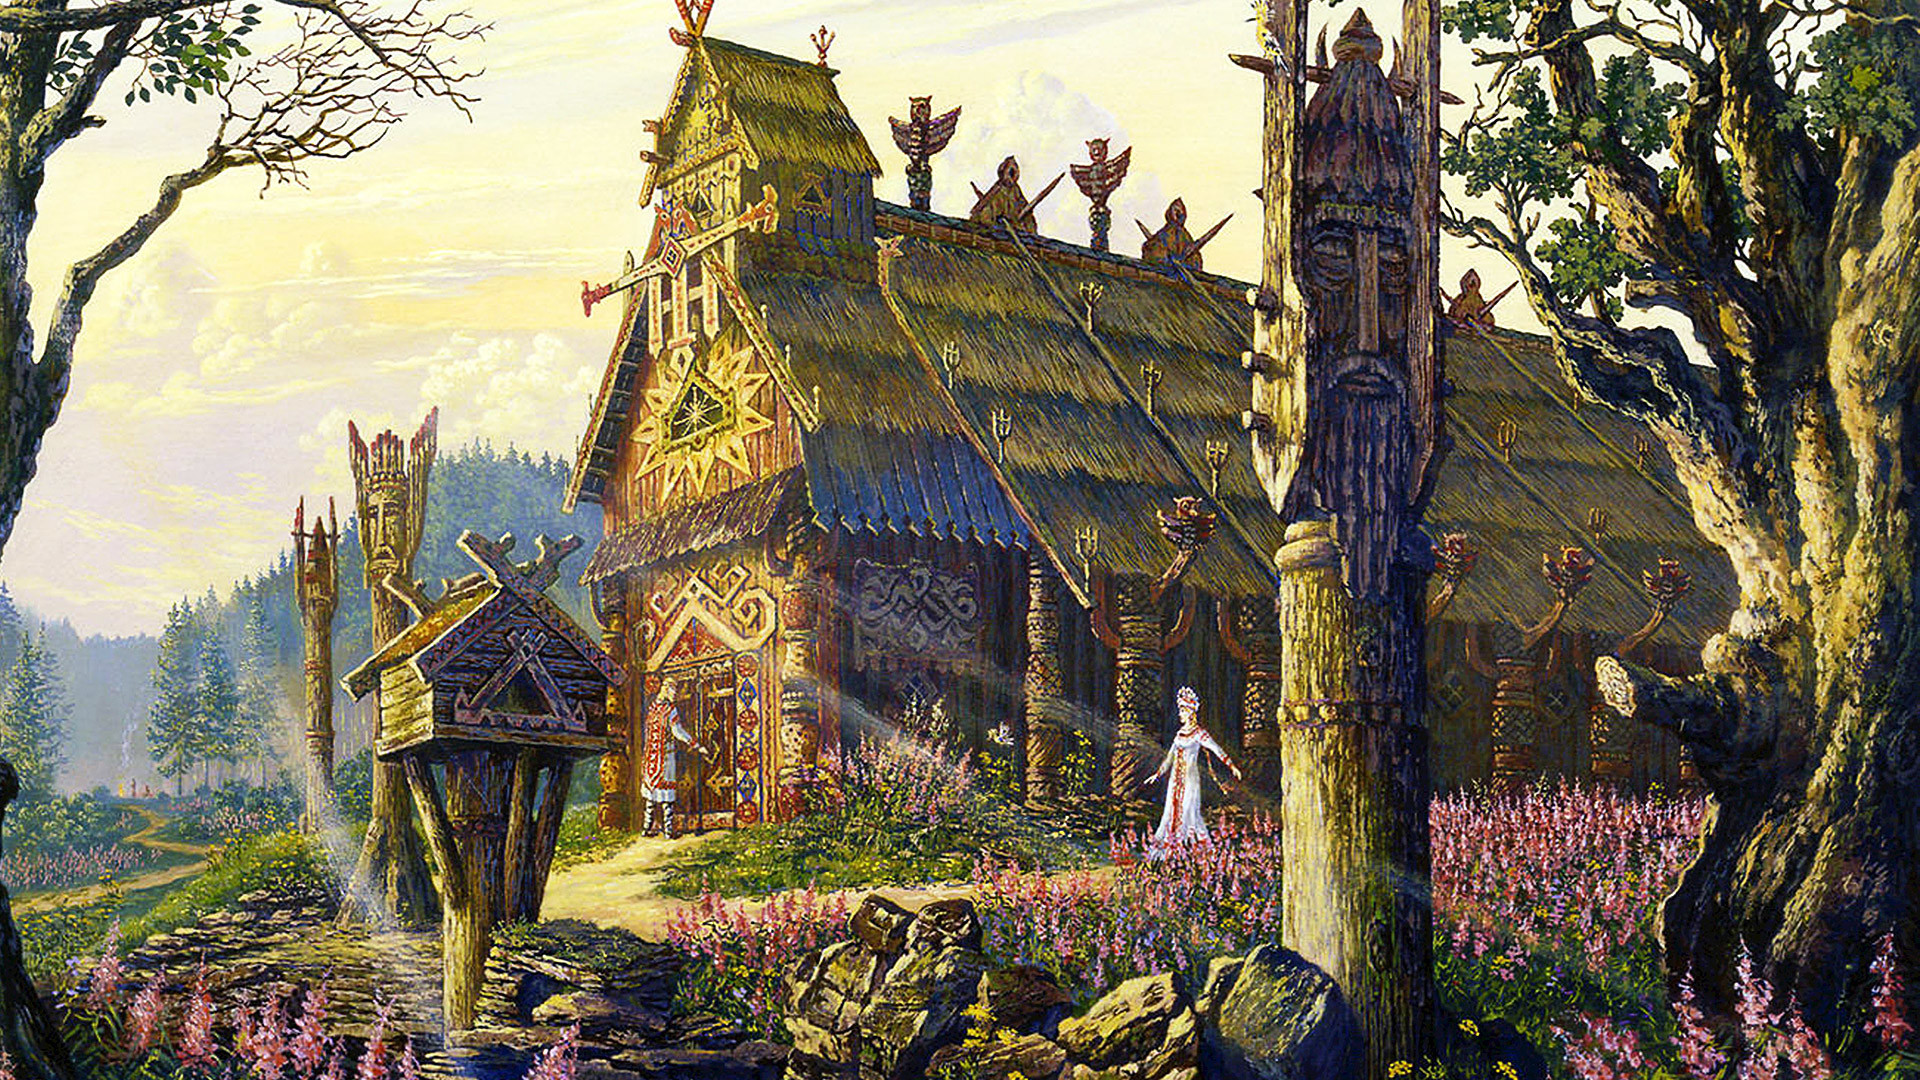 "O templo de um deus eslavo", por V.Ivanov